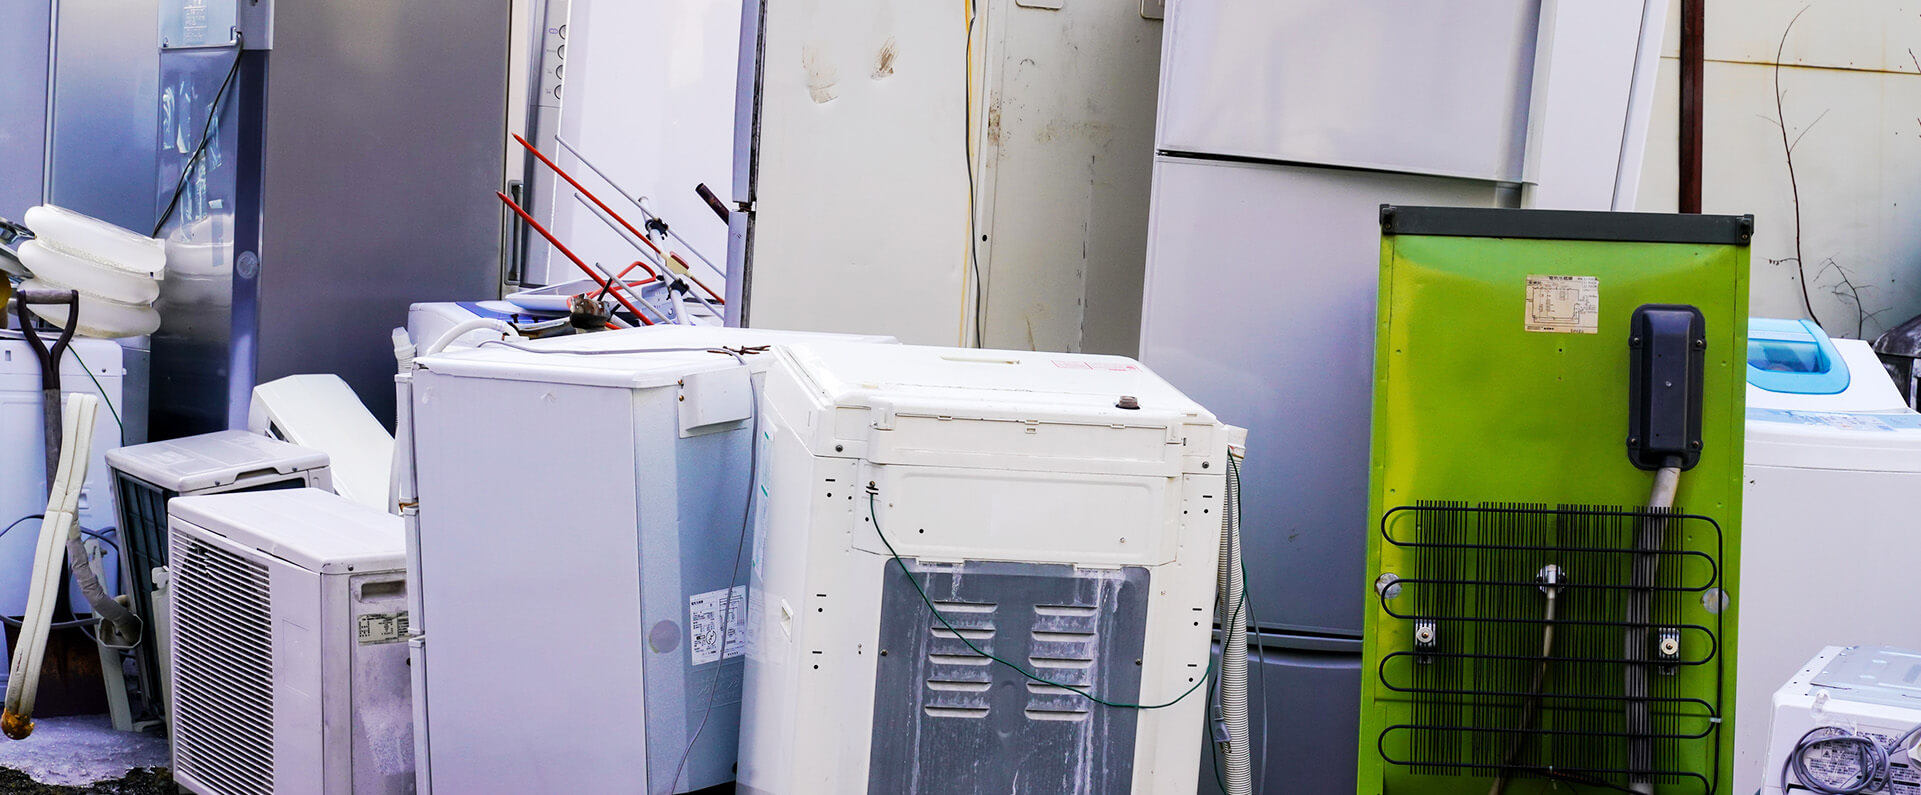 石川産業の取扱品目 冷蔵庫